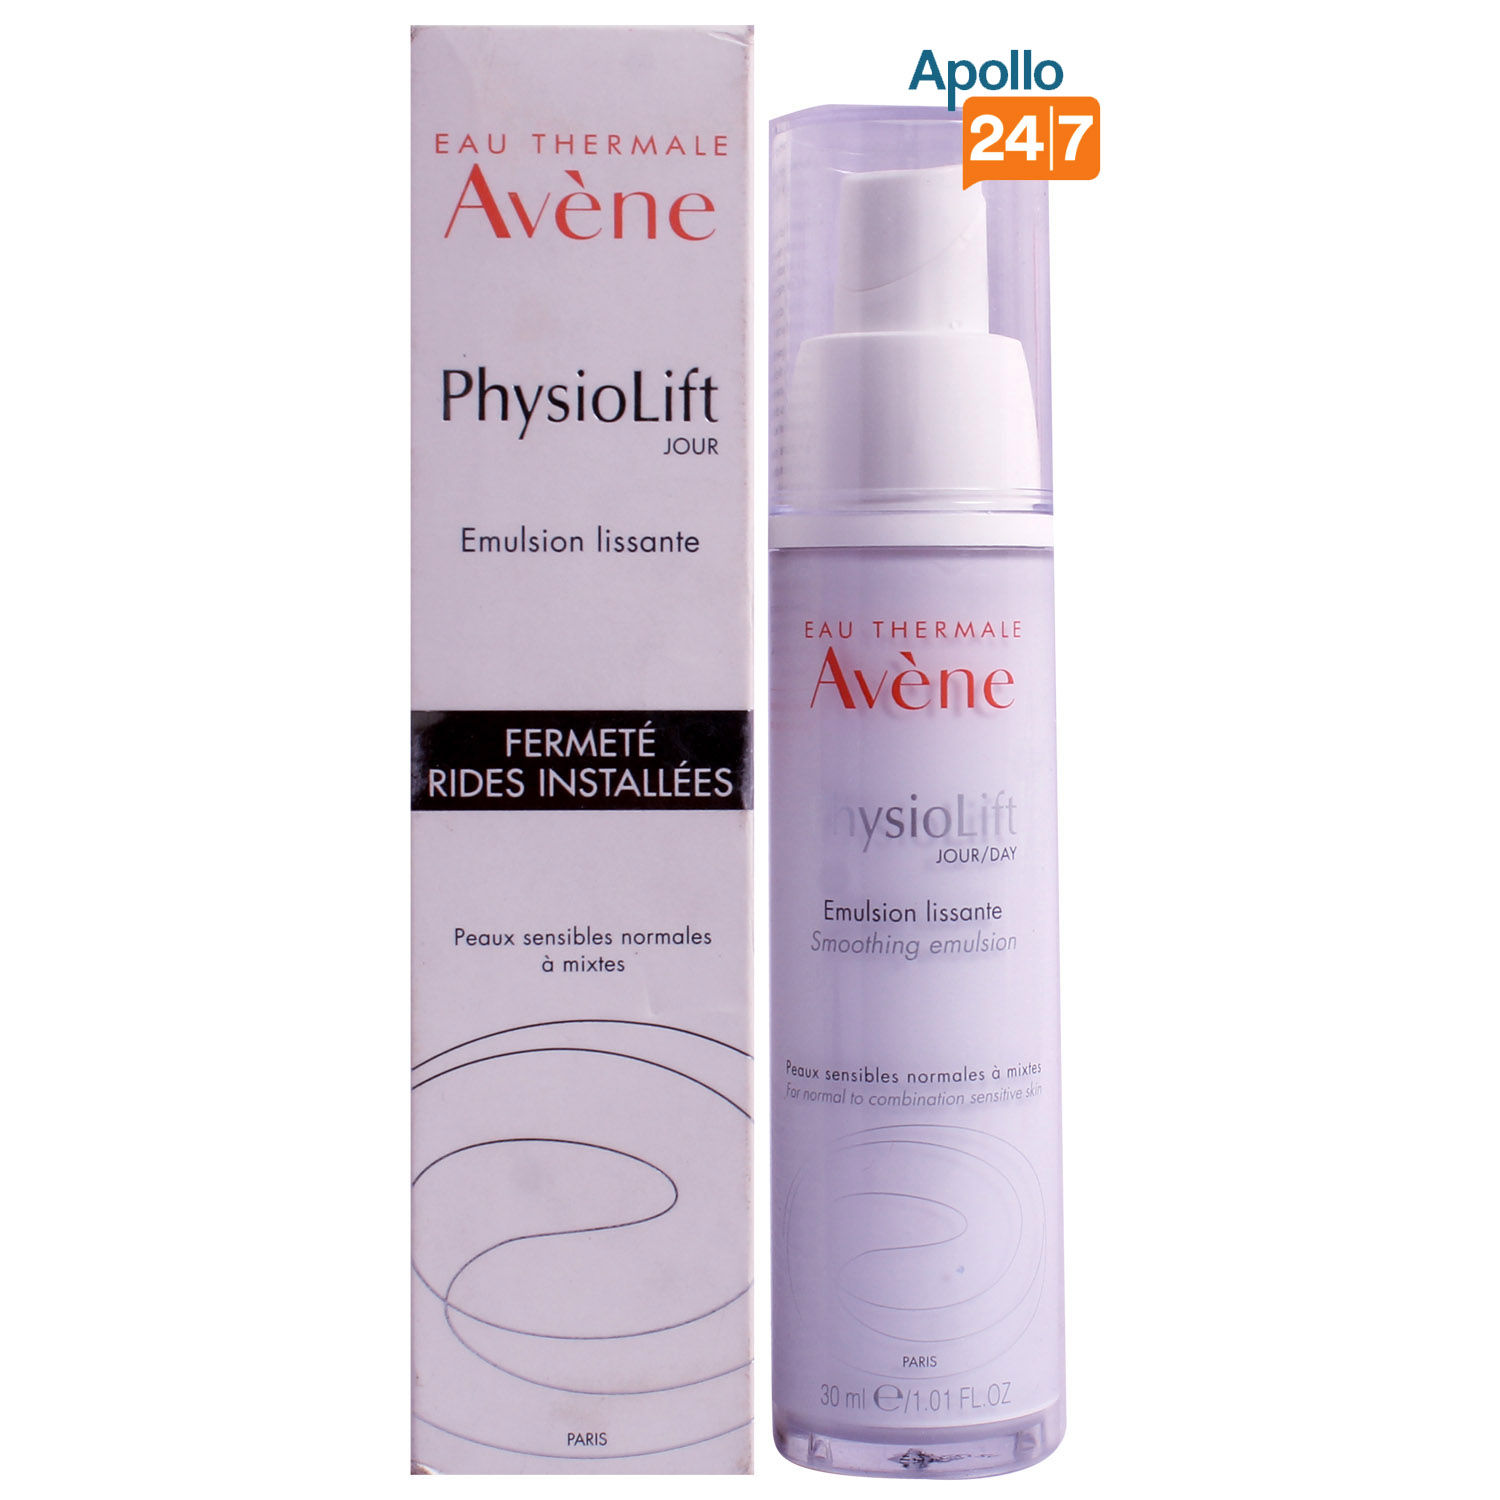 Avene Physiolift Smoothing Day Emulsion, 30 ml, Pack of 1 